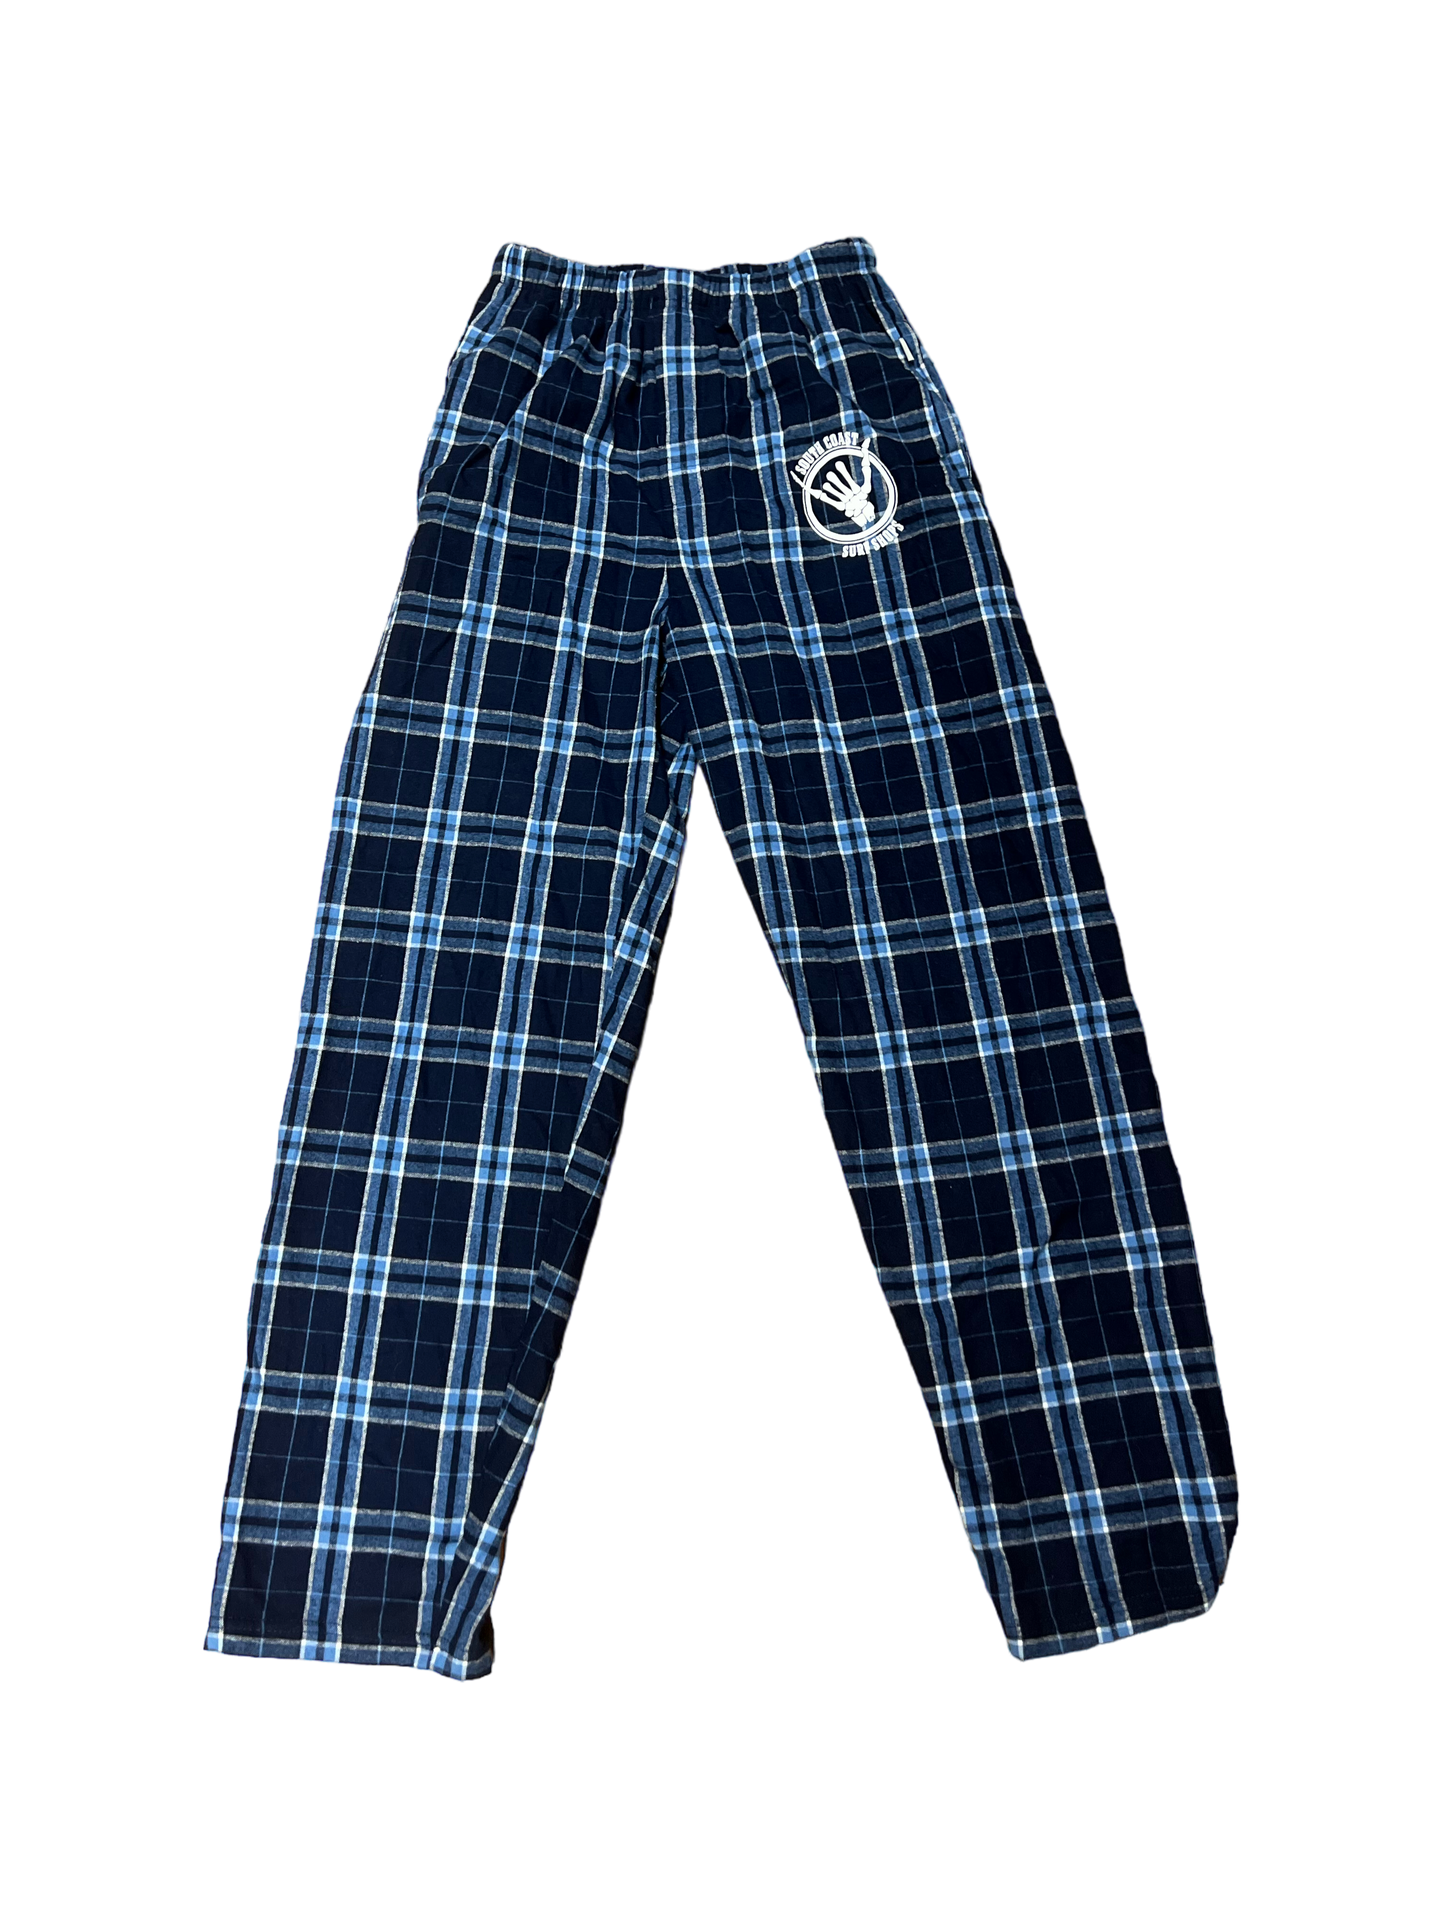 South Coast Shaka Pajama Pants